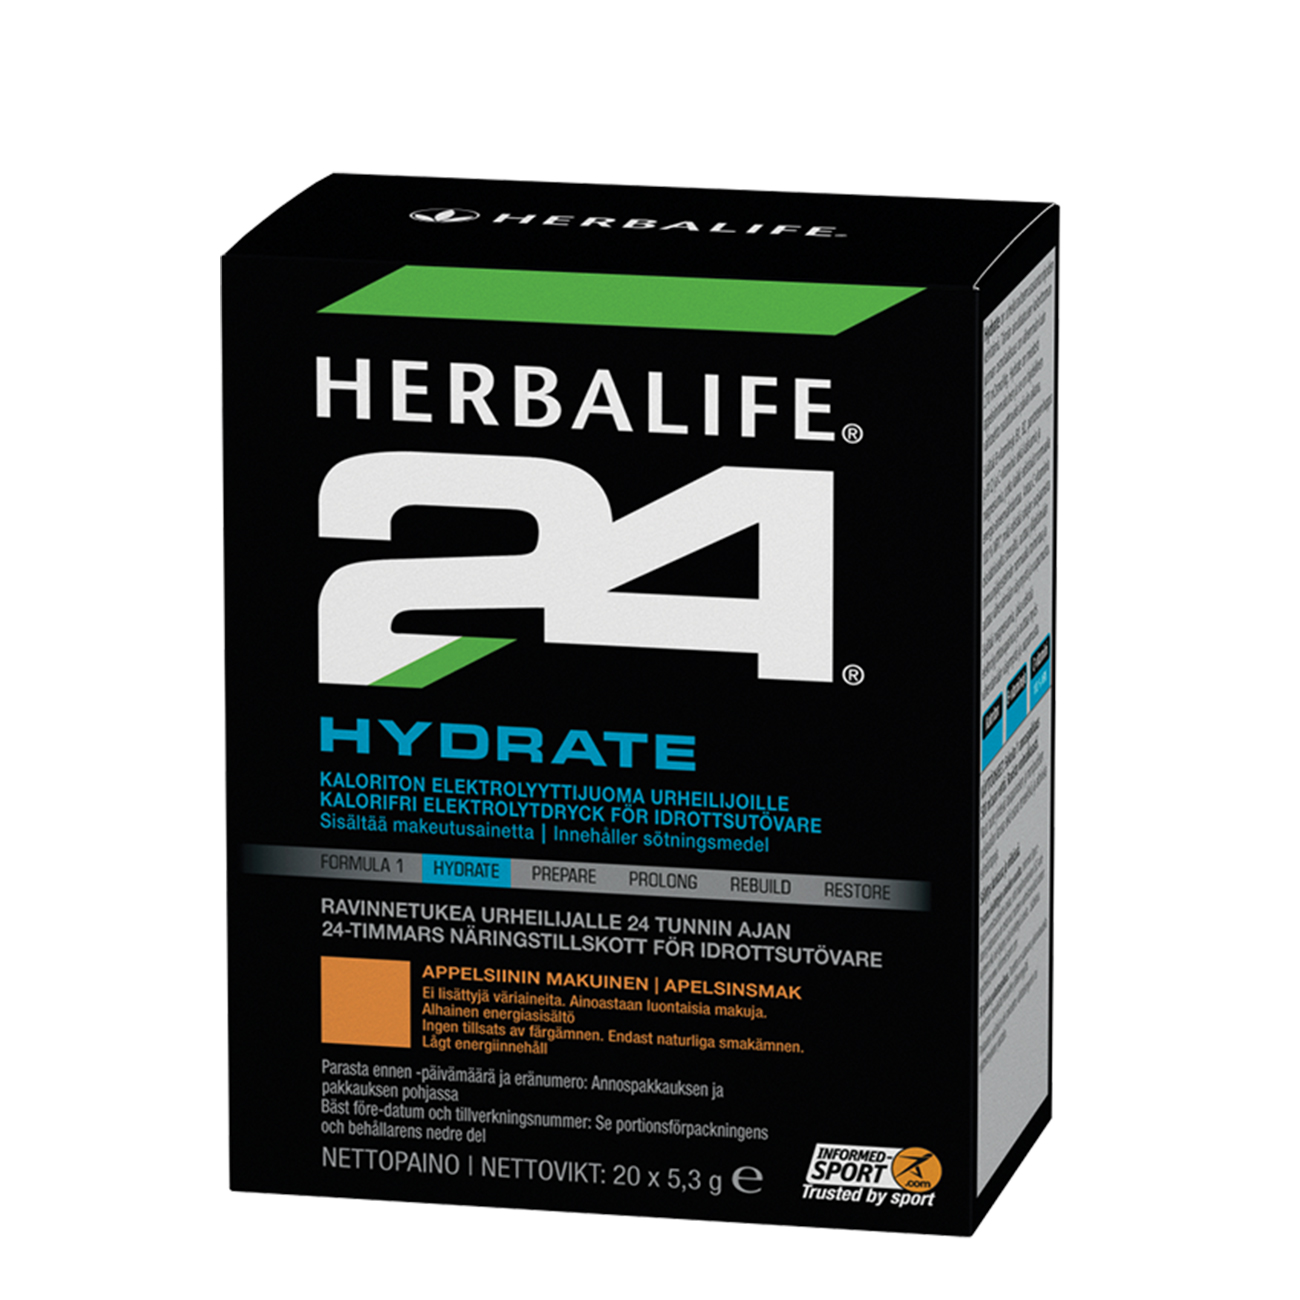 Herbalife24® Hydrate Elektrolytdrink Orange produktbild